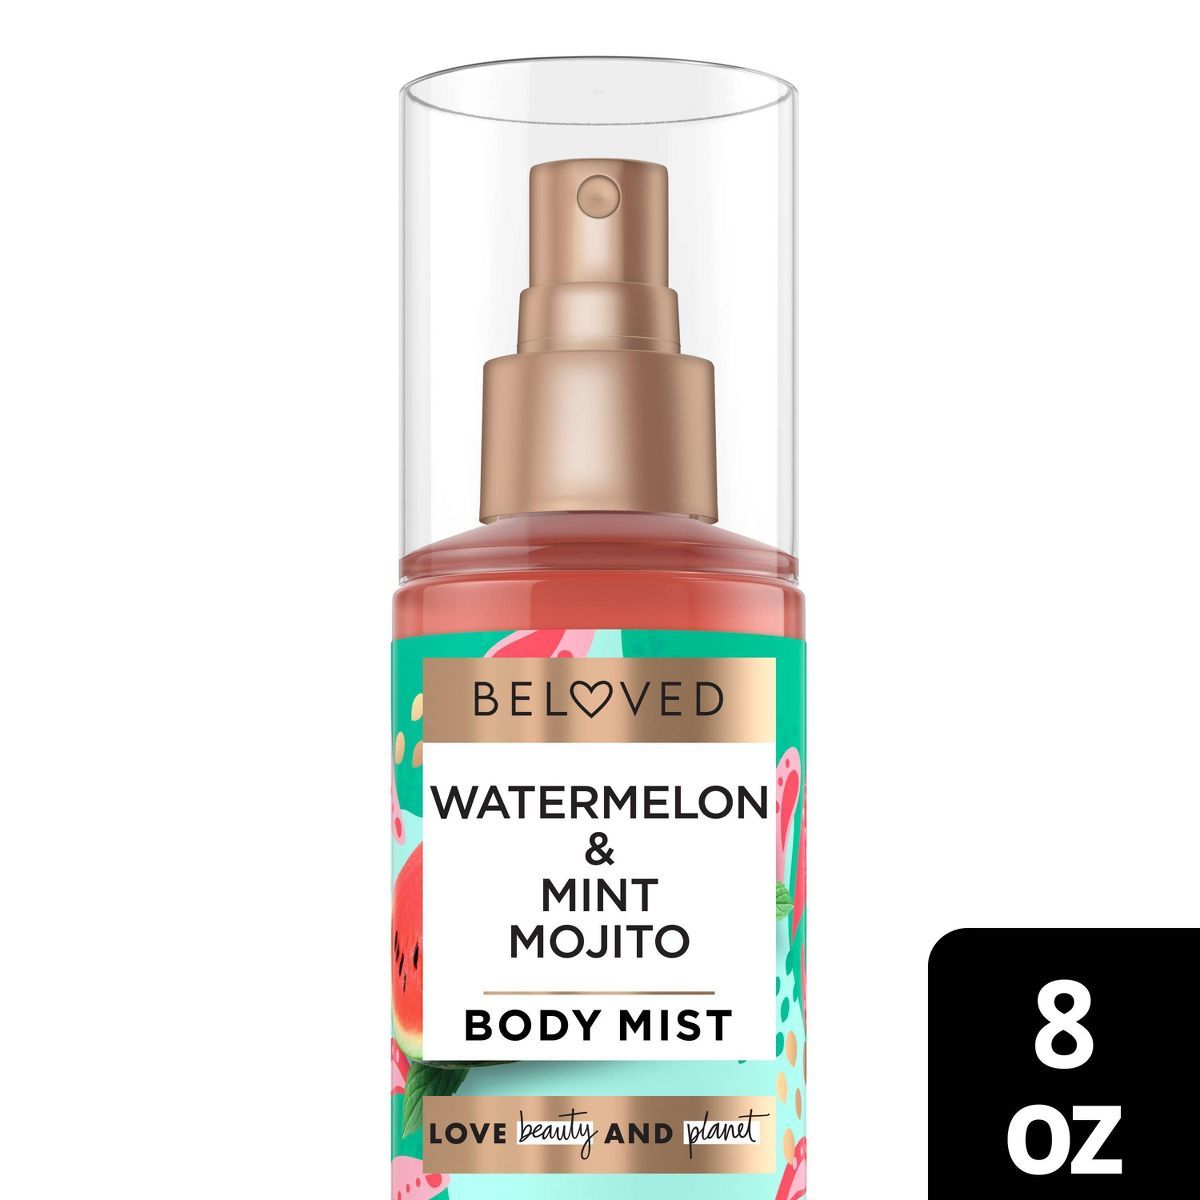 Beloved Watermelon & Mint Mojito Body Mist - 8 fl oz | Target